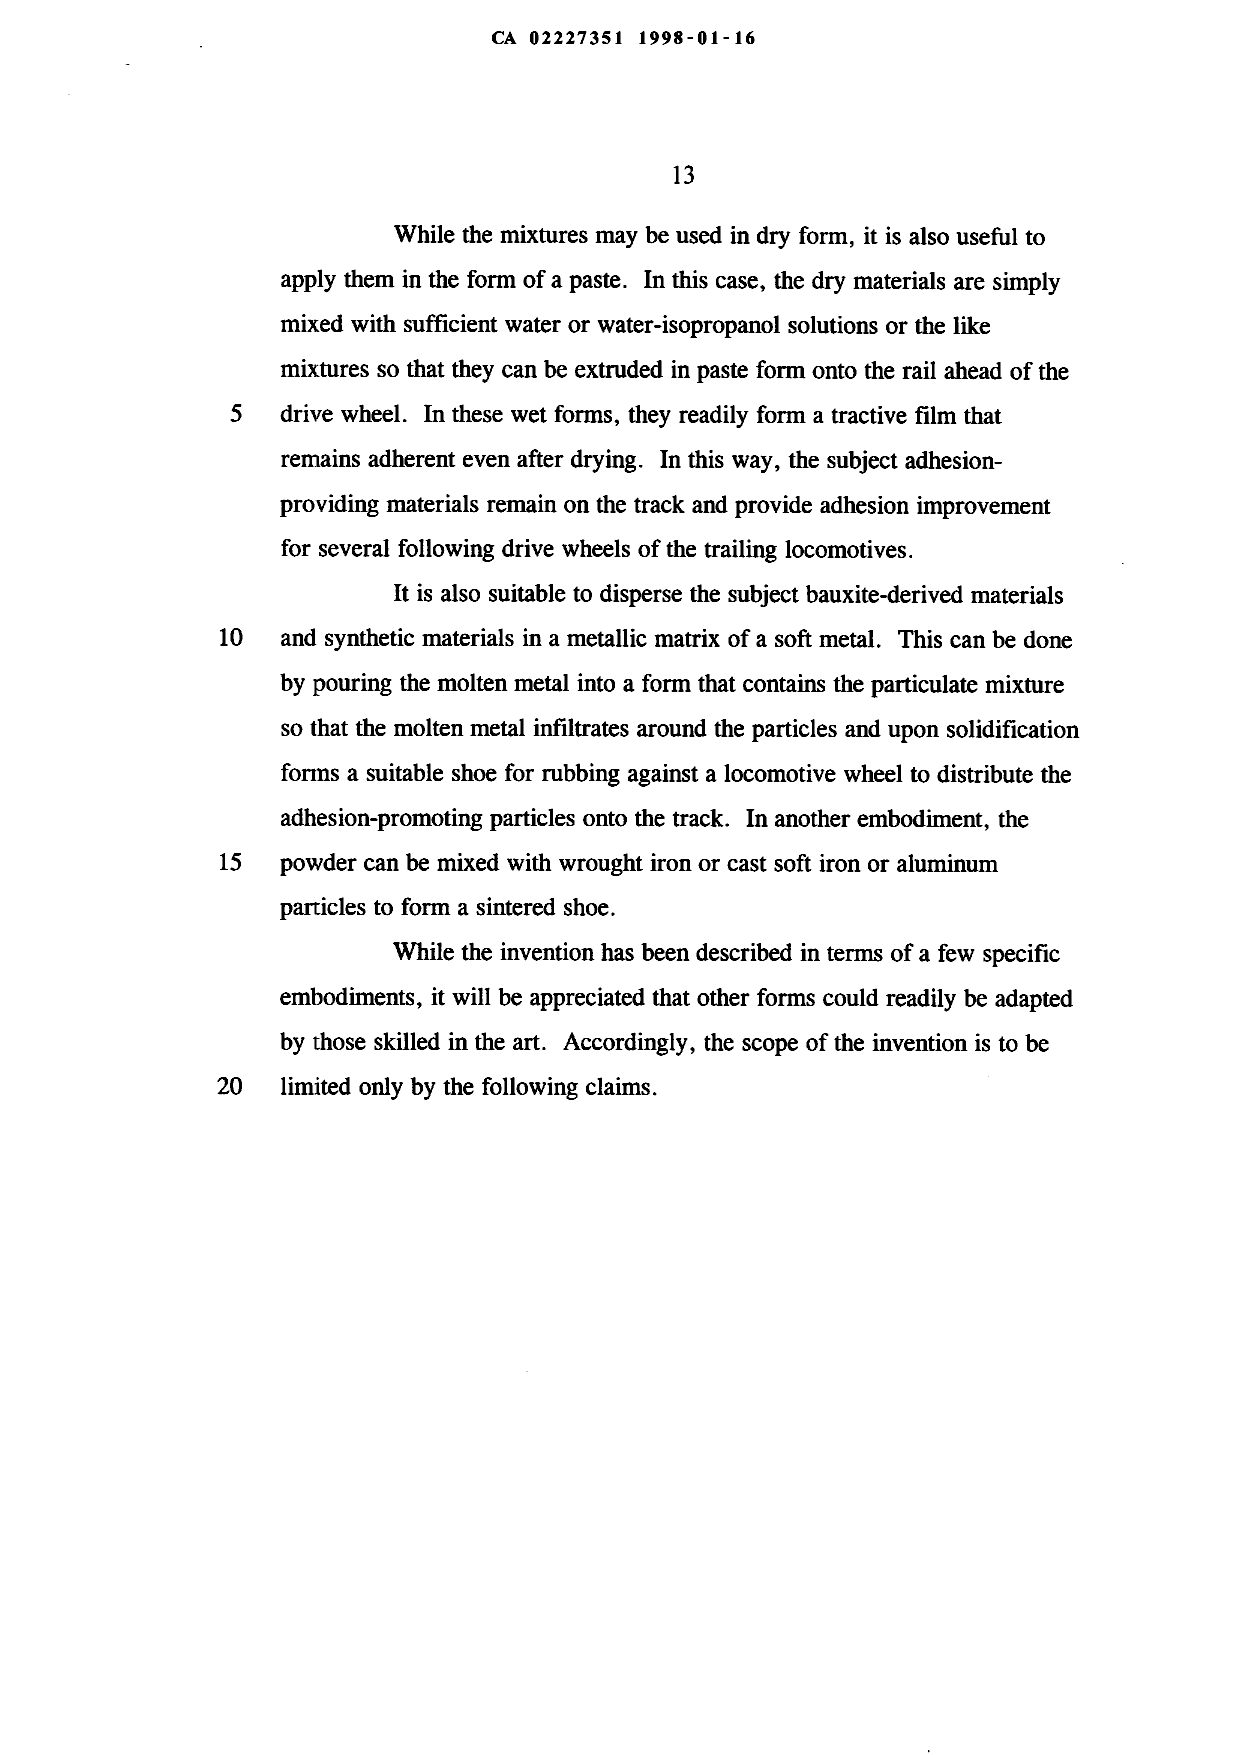 Canadian Patent Document 2227351. Description 19971216. Image 13 of 13